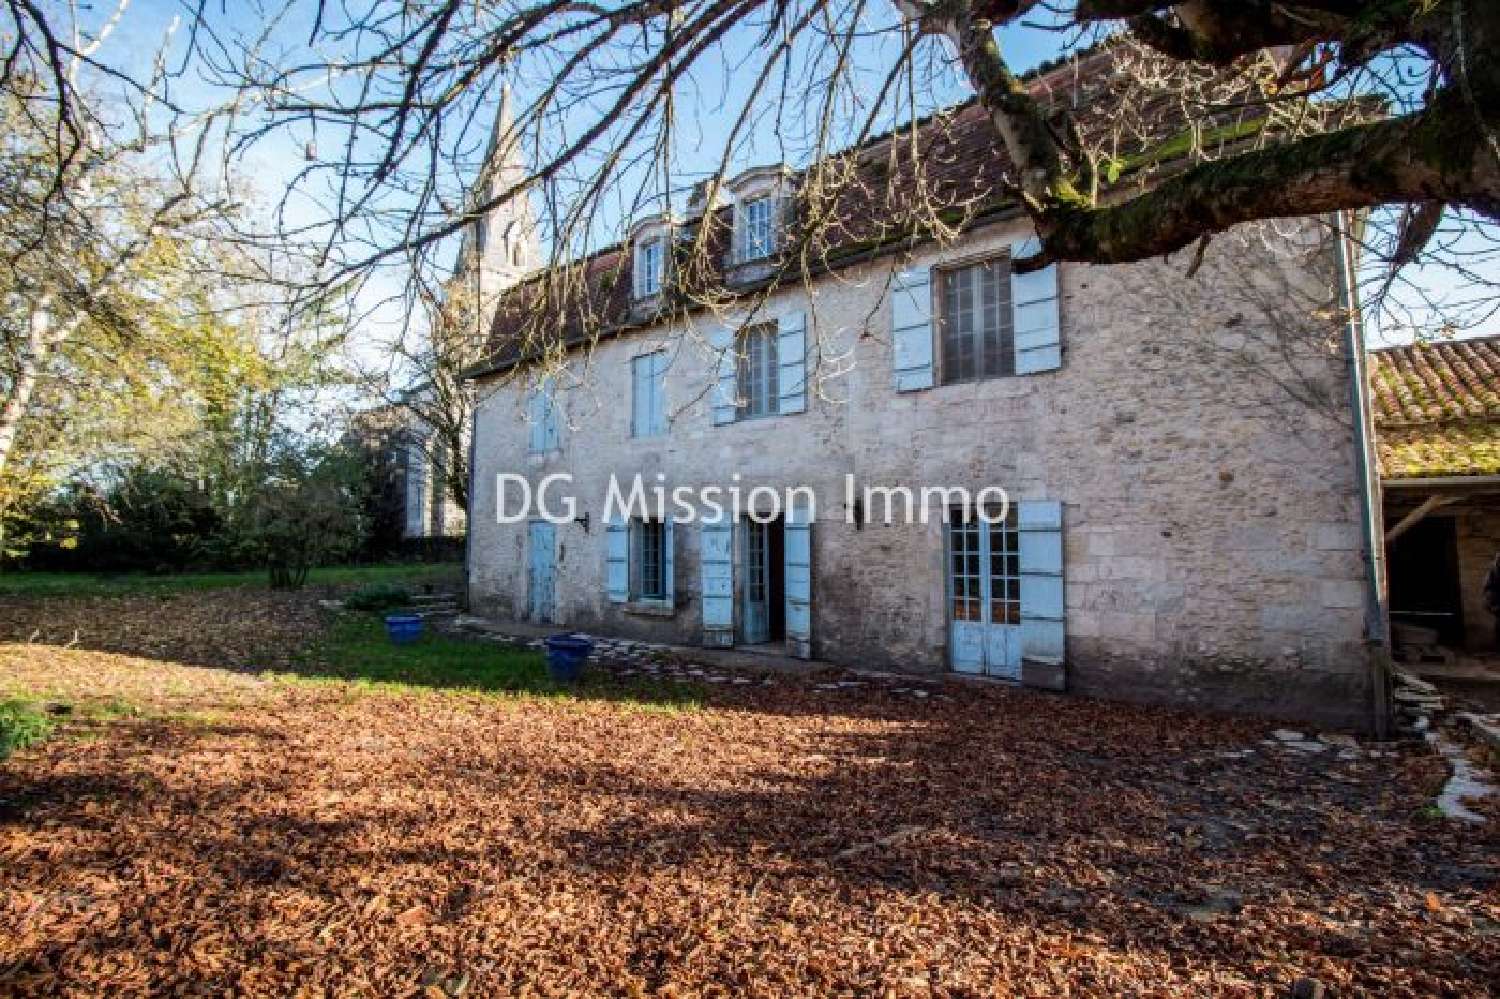  à vendre maison Trélissac Dordogne 2